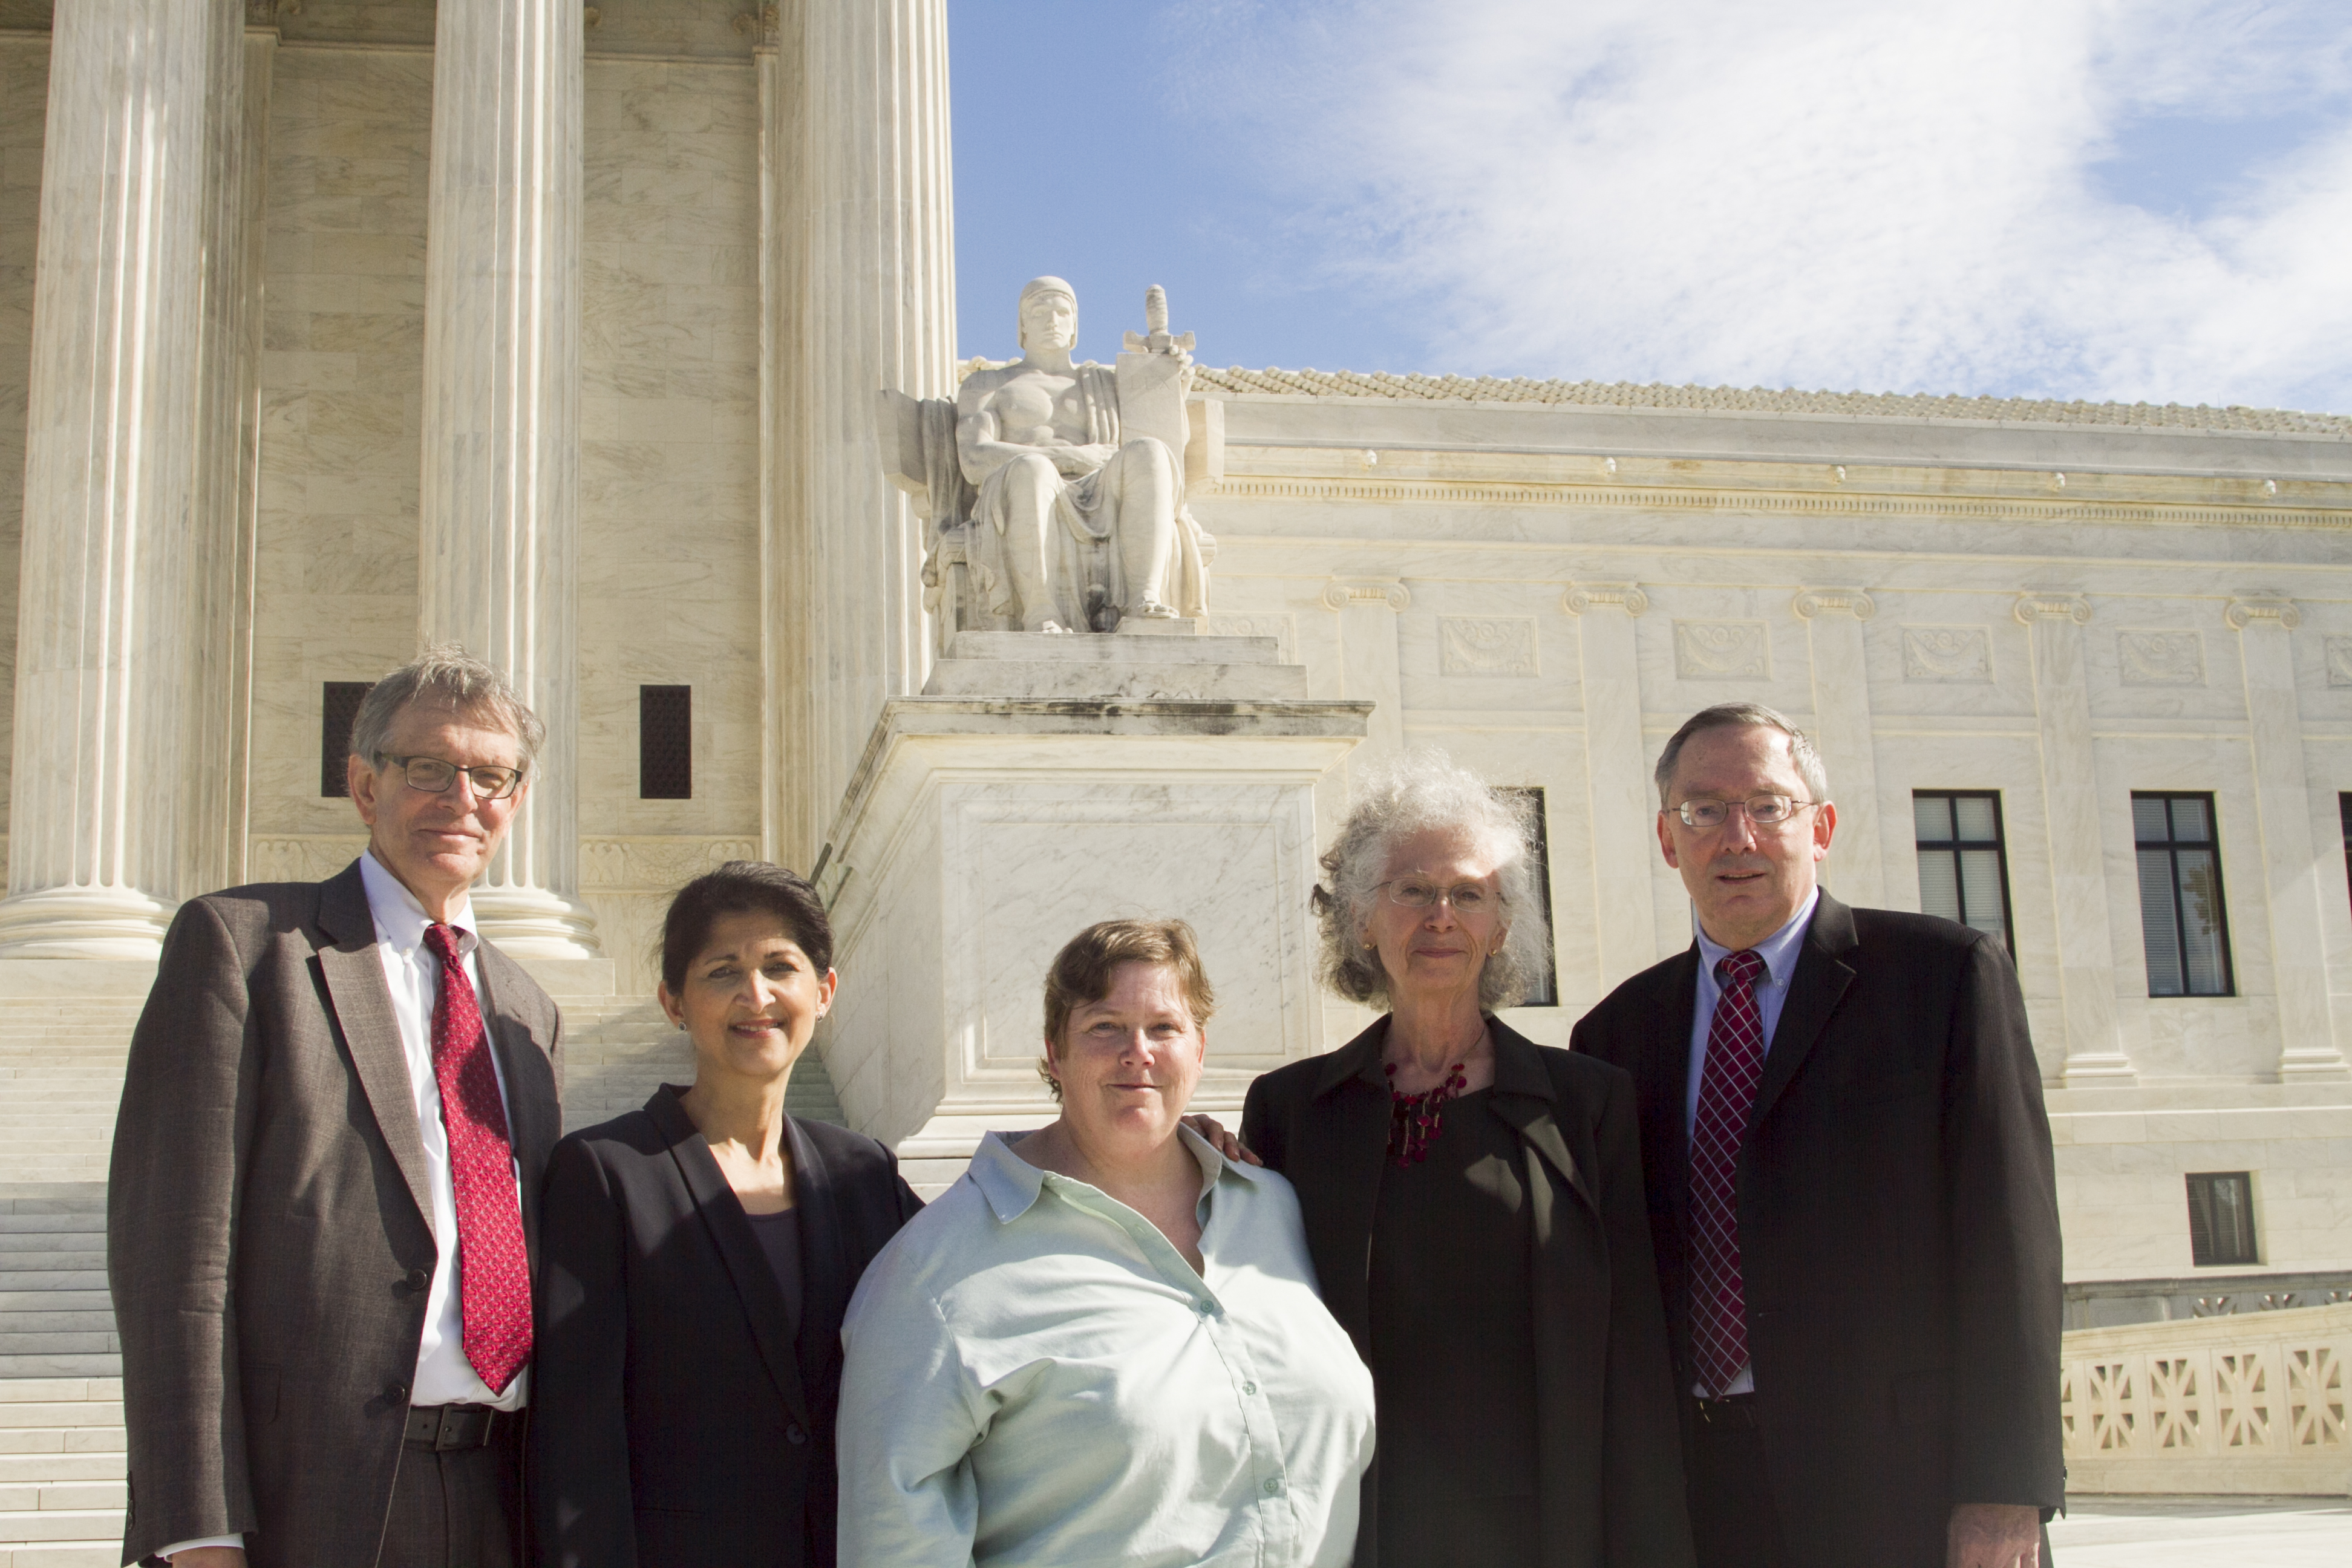 AU Legal Team and Plaintiffs at SCOTUS